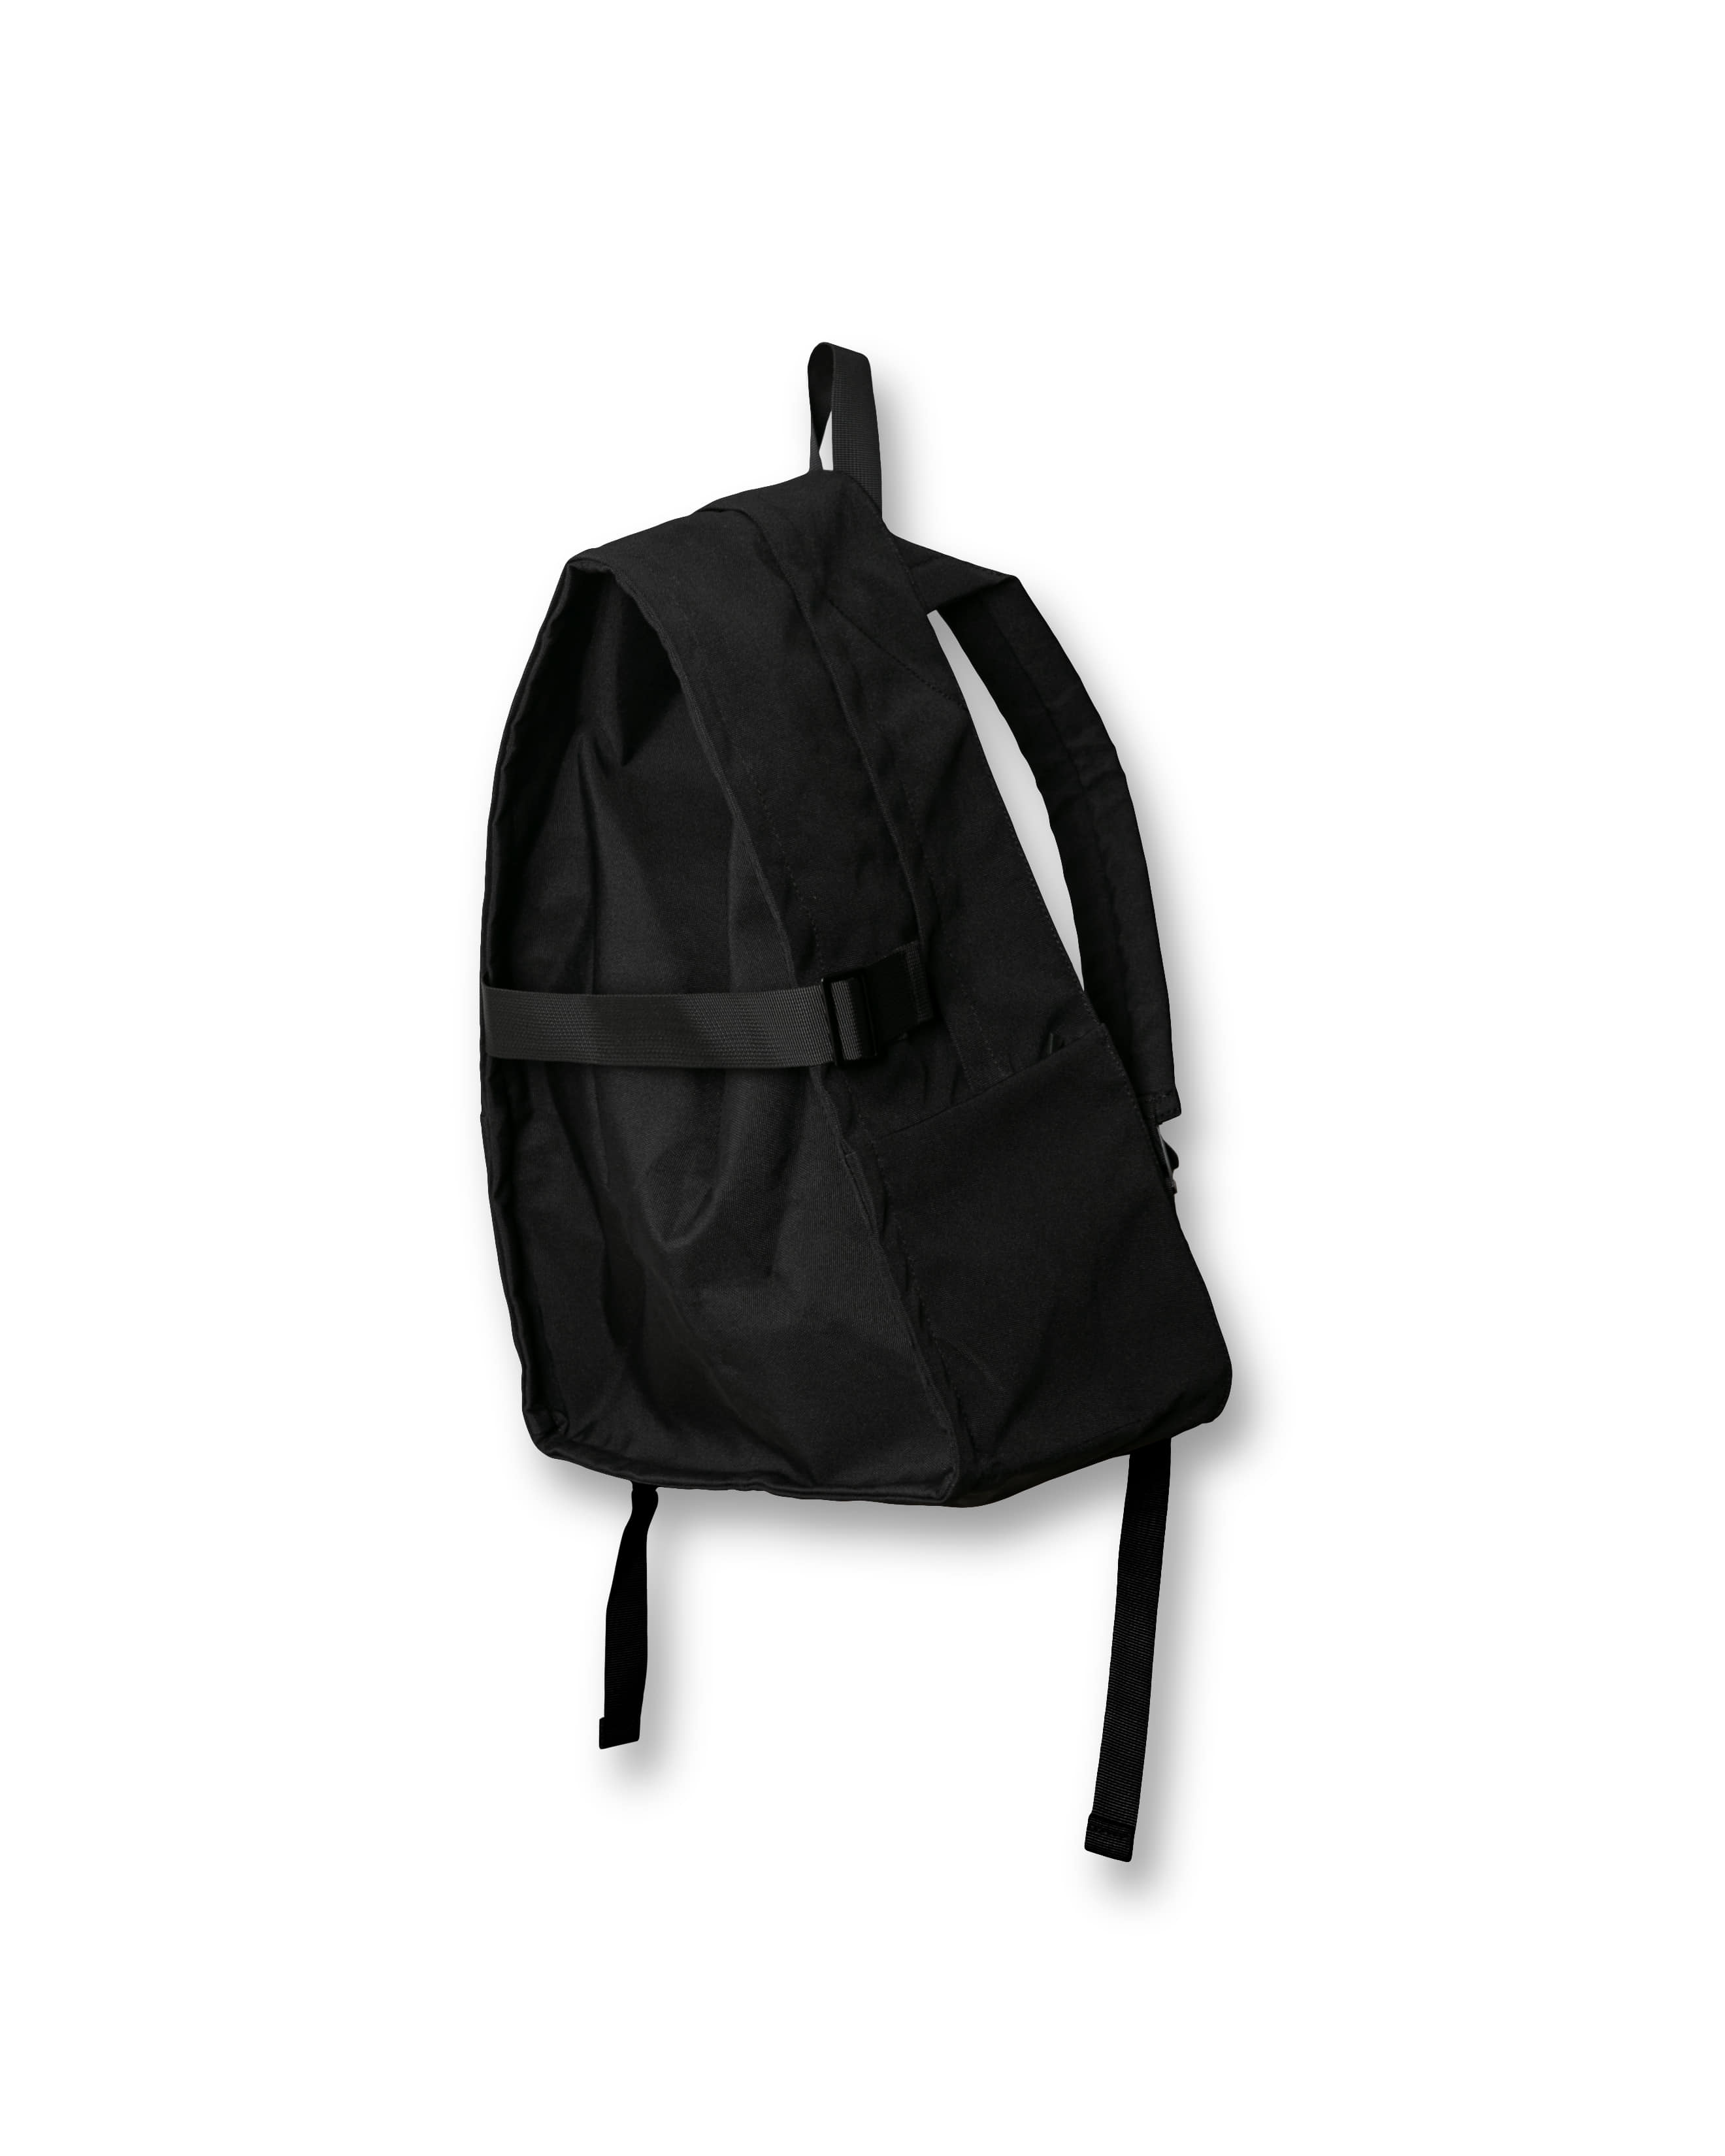 Strap Cave Backpack - Black